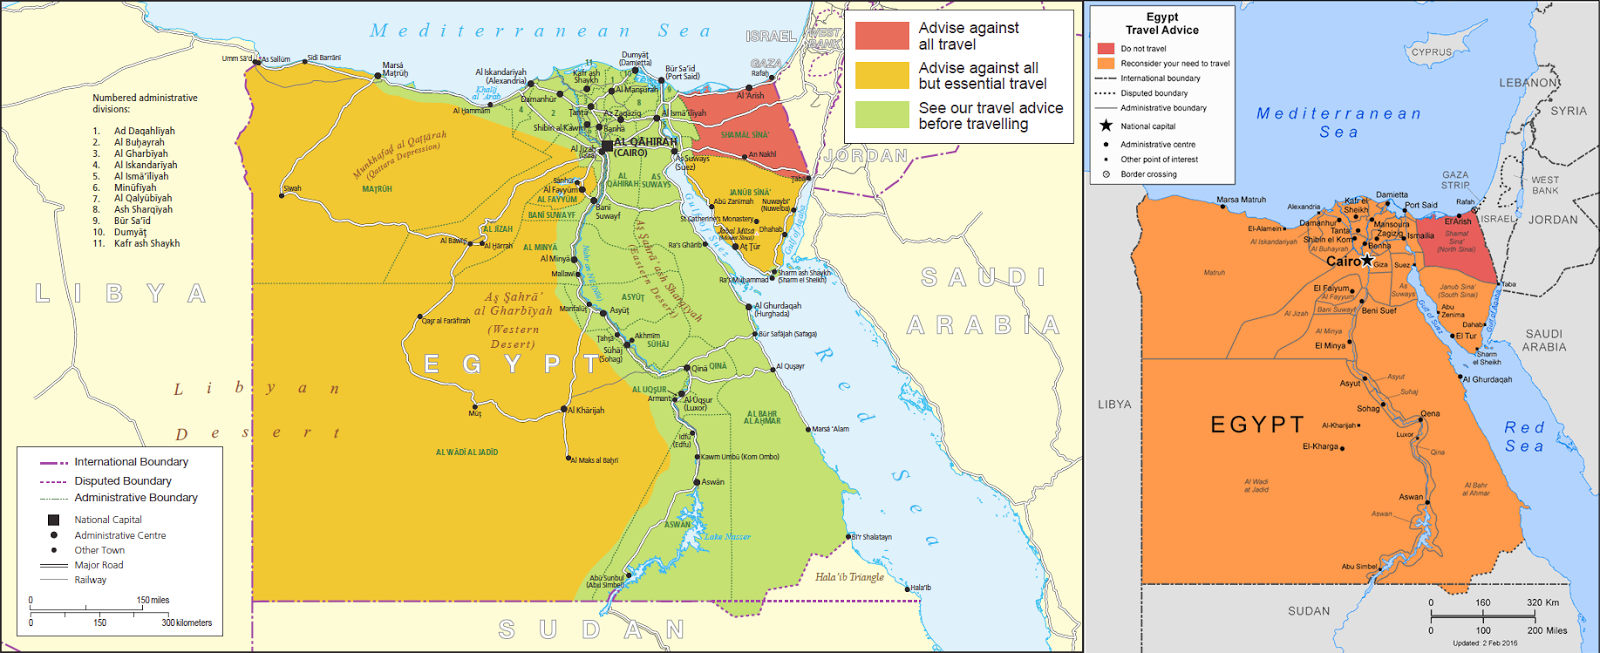 australia travel advisory egypt